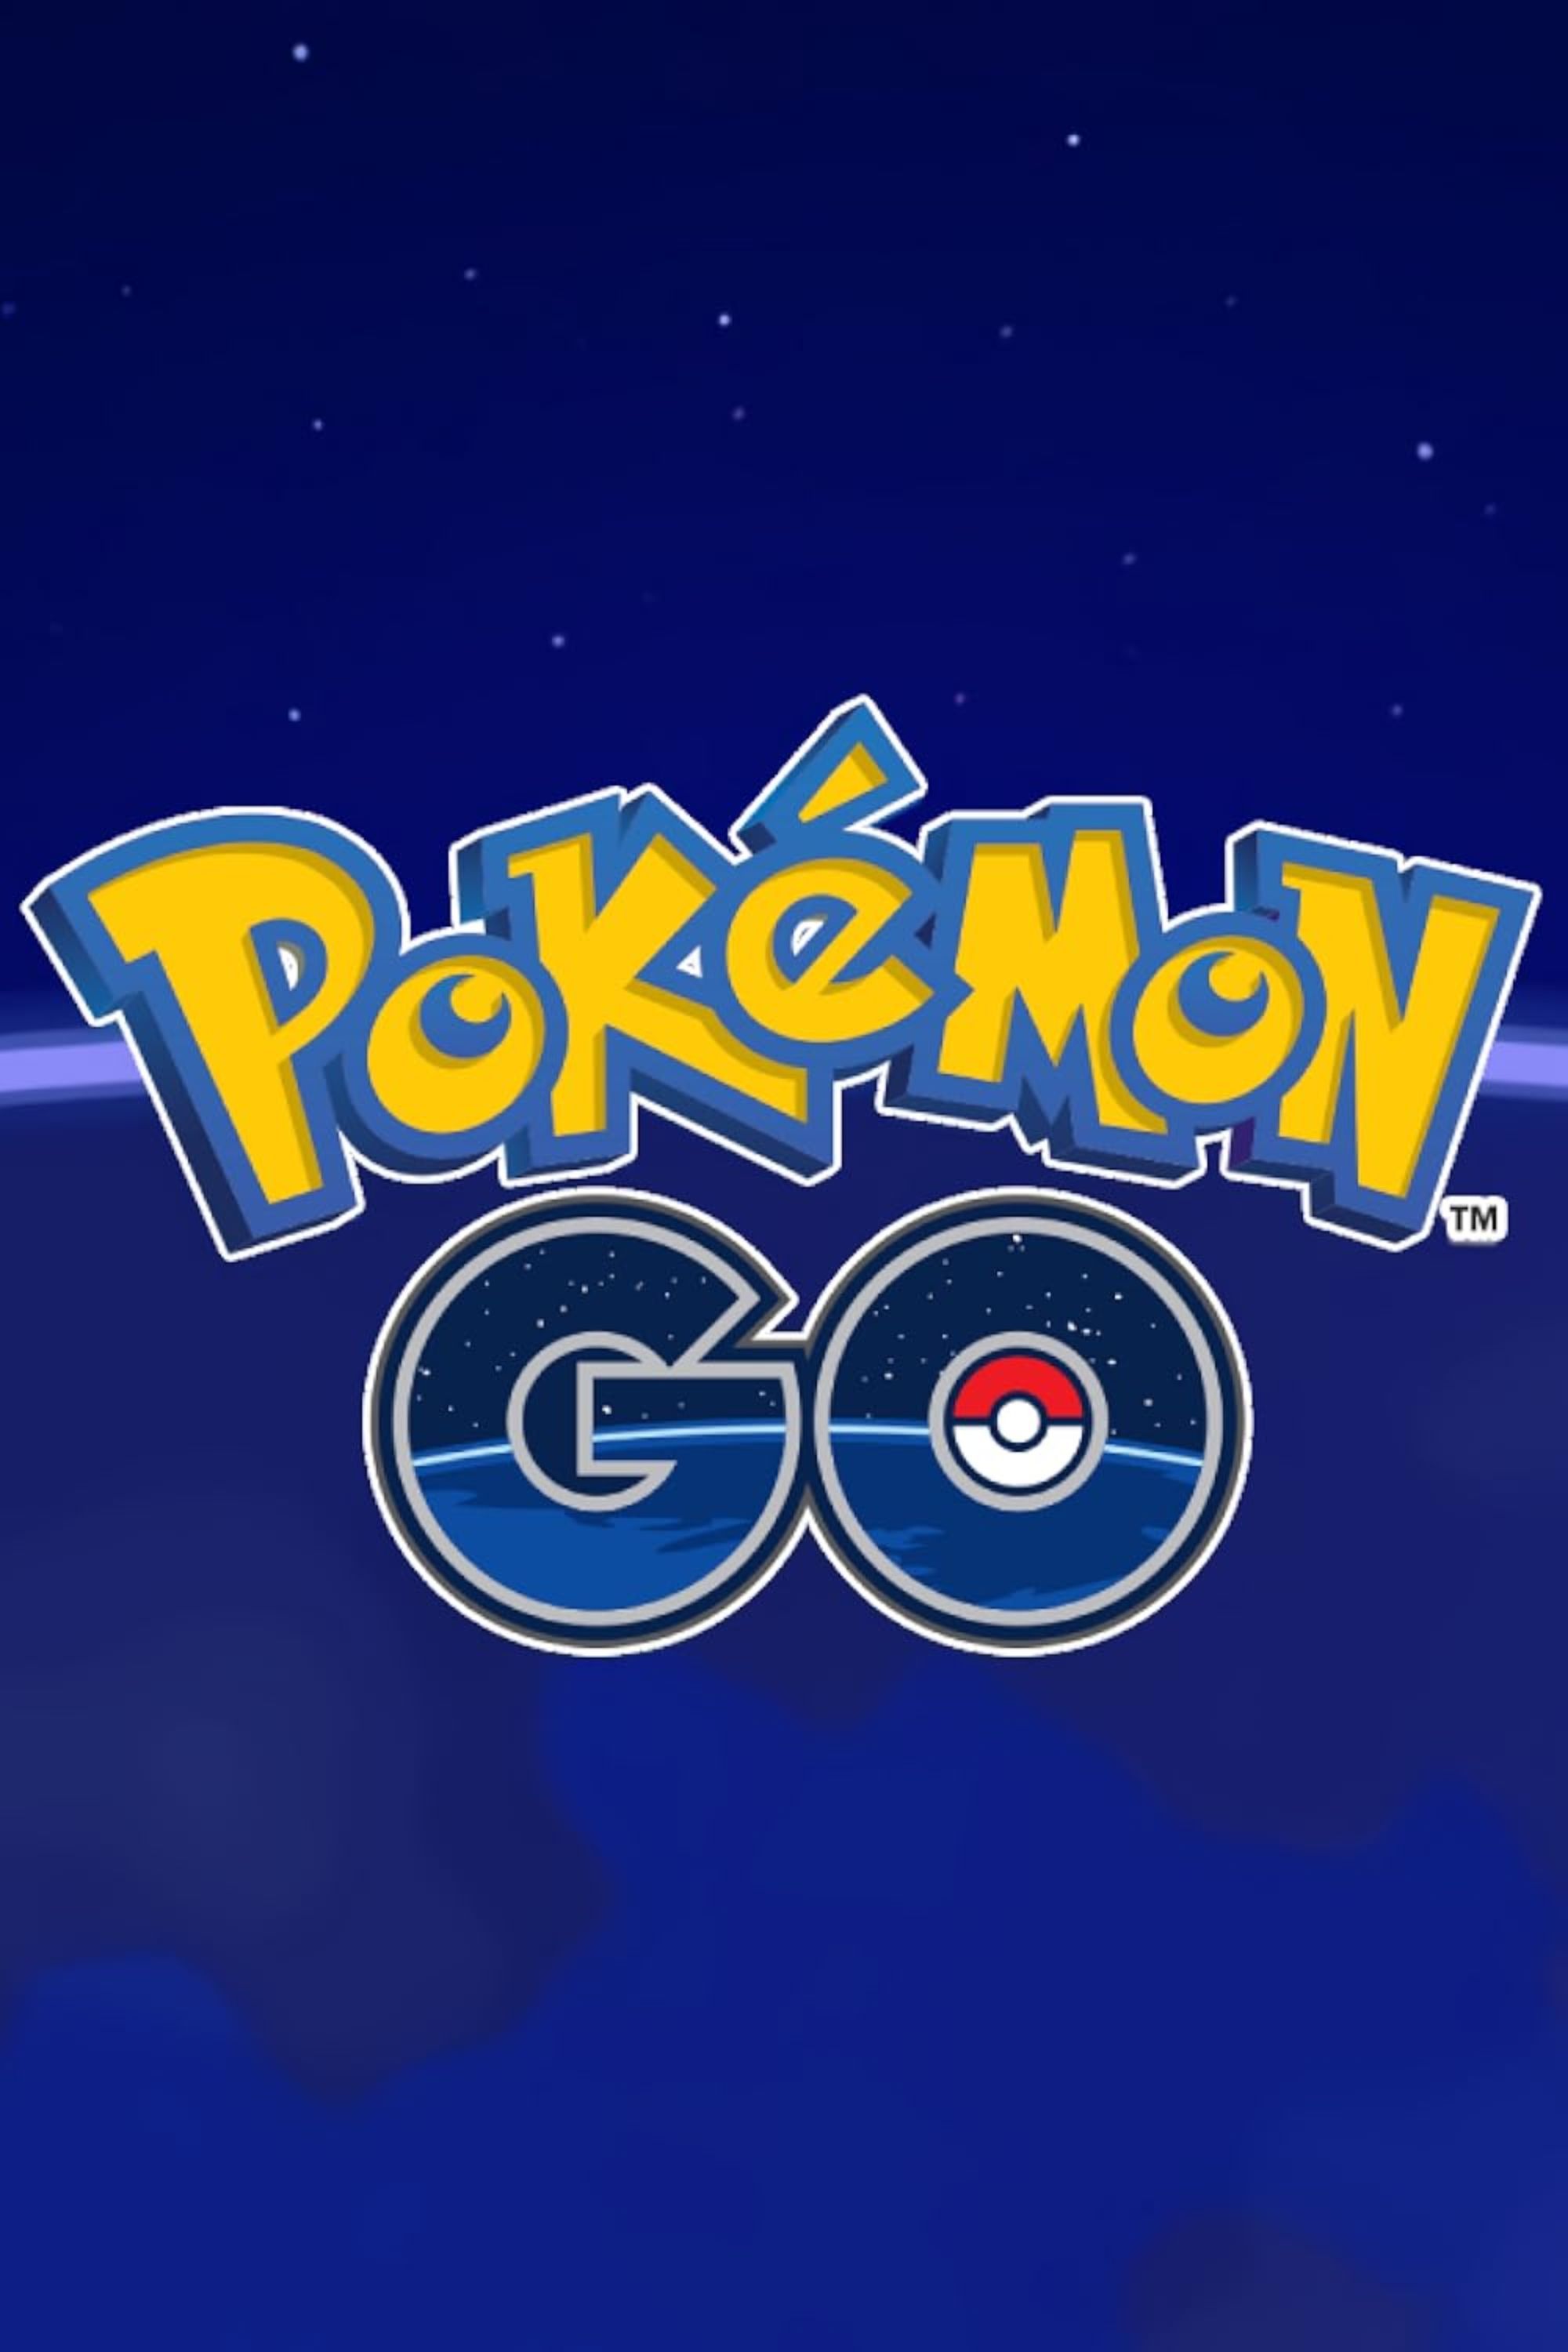 Pokémon Go Logo | Pokemon logo, Go logo, Pokemon